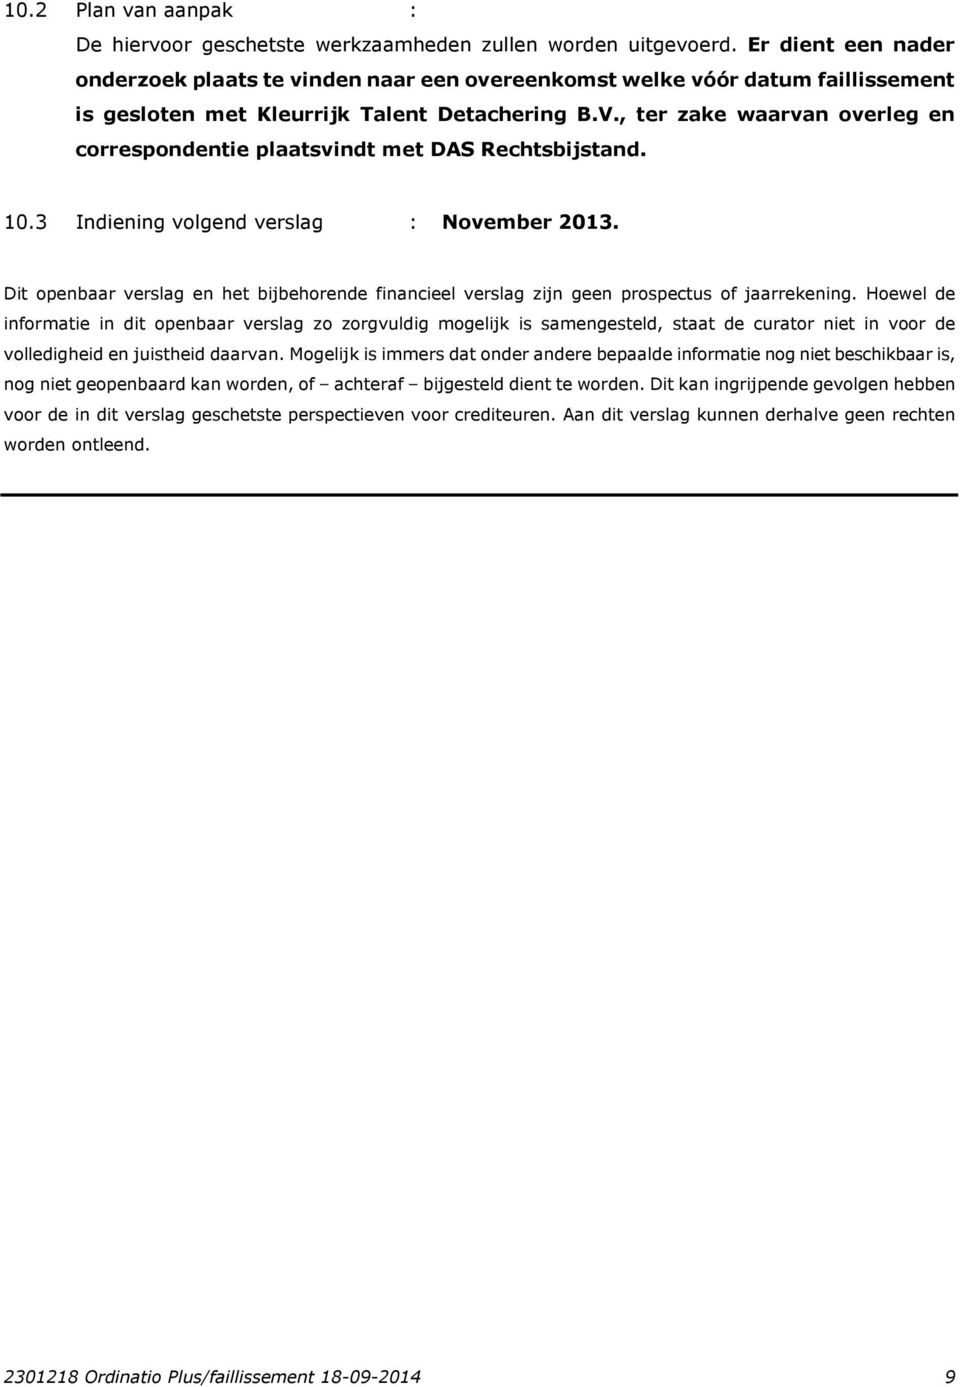 , ter zake waarvan overleg en correspondentie plaatsvindt met DAS Rechtsbijstand. 10.3 Indiening volgend verslag : November 2013.